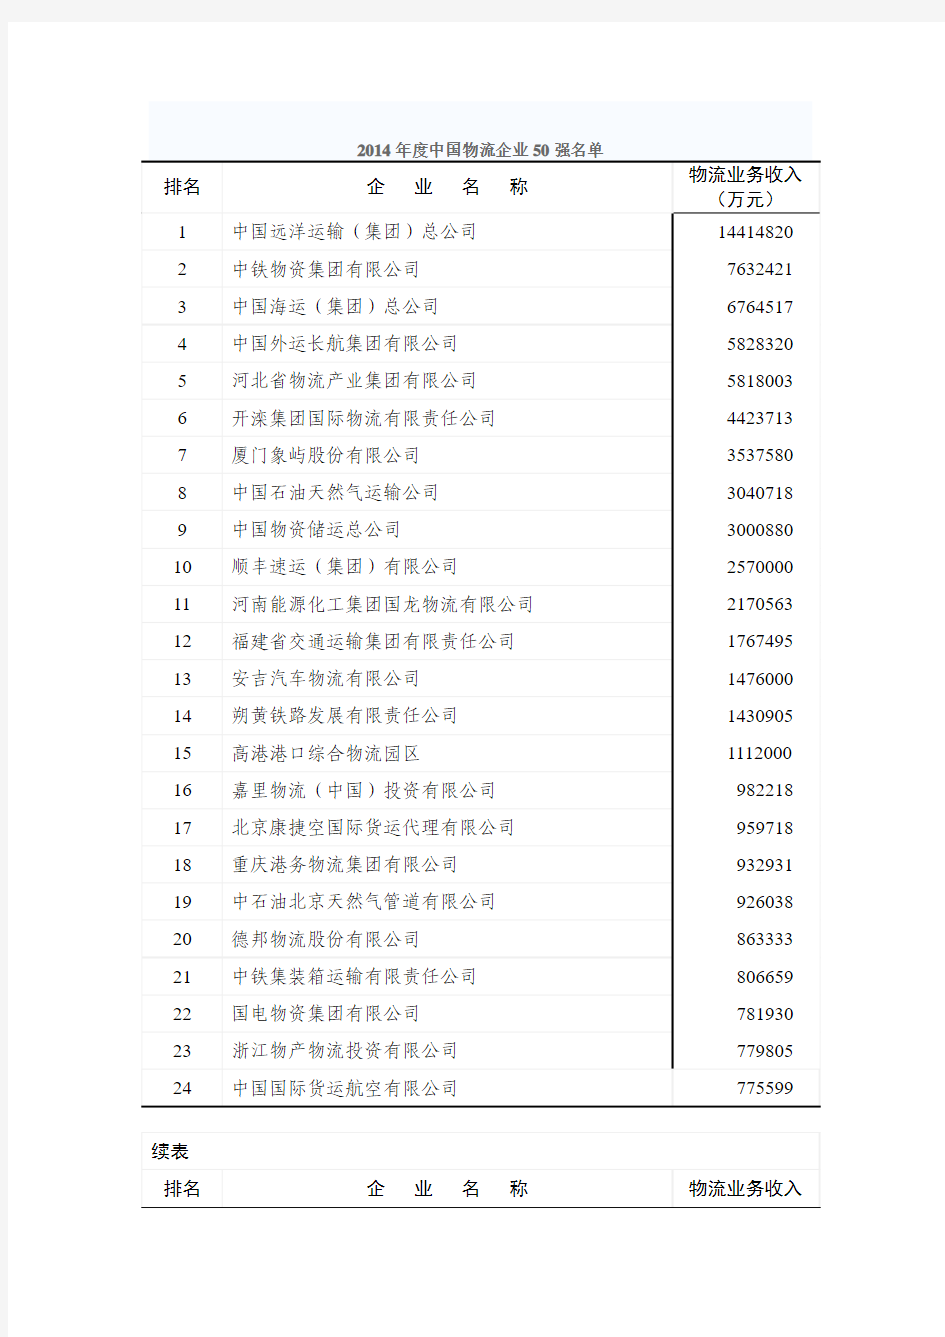 2014年度中国物流企业50强排名的通告